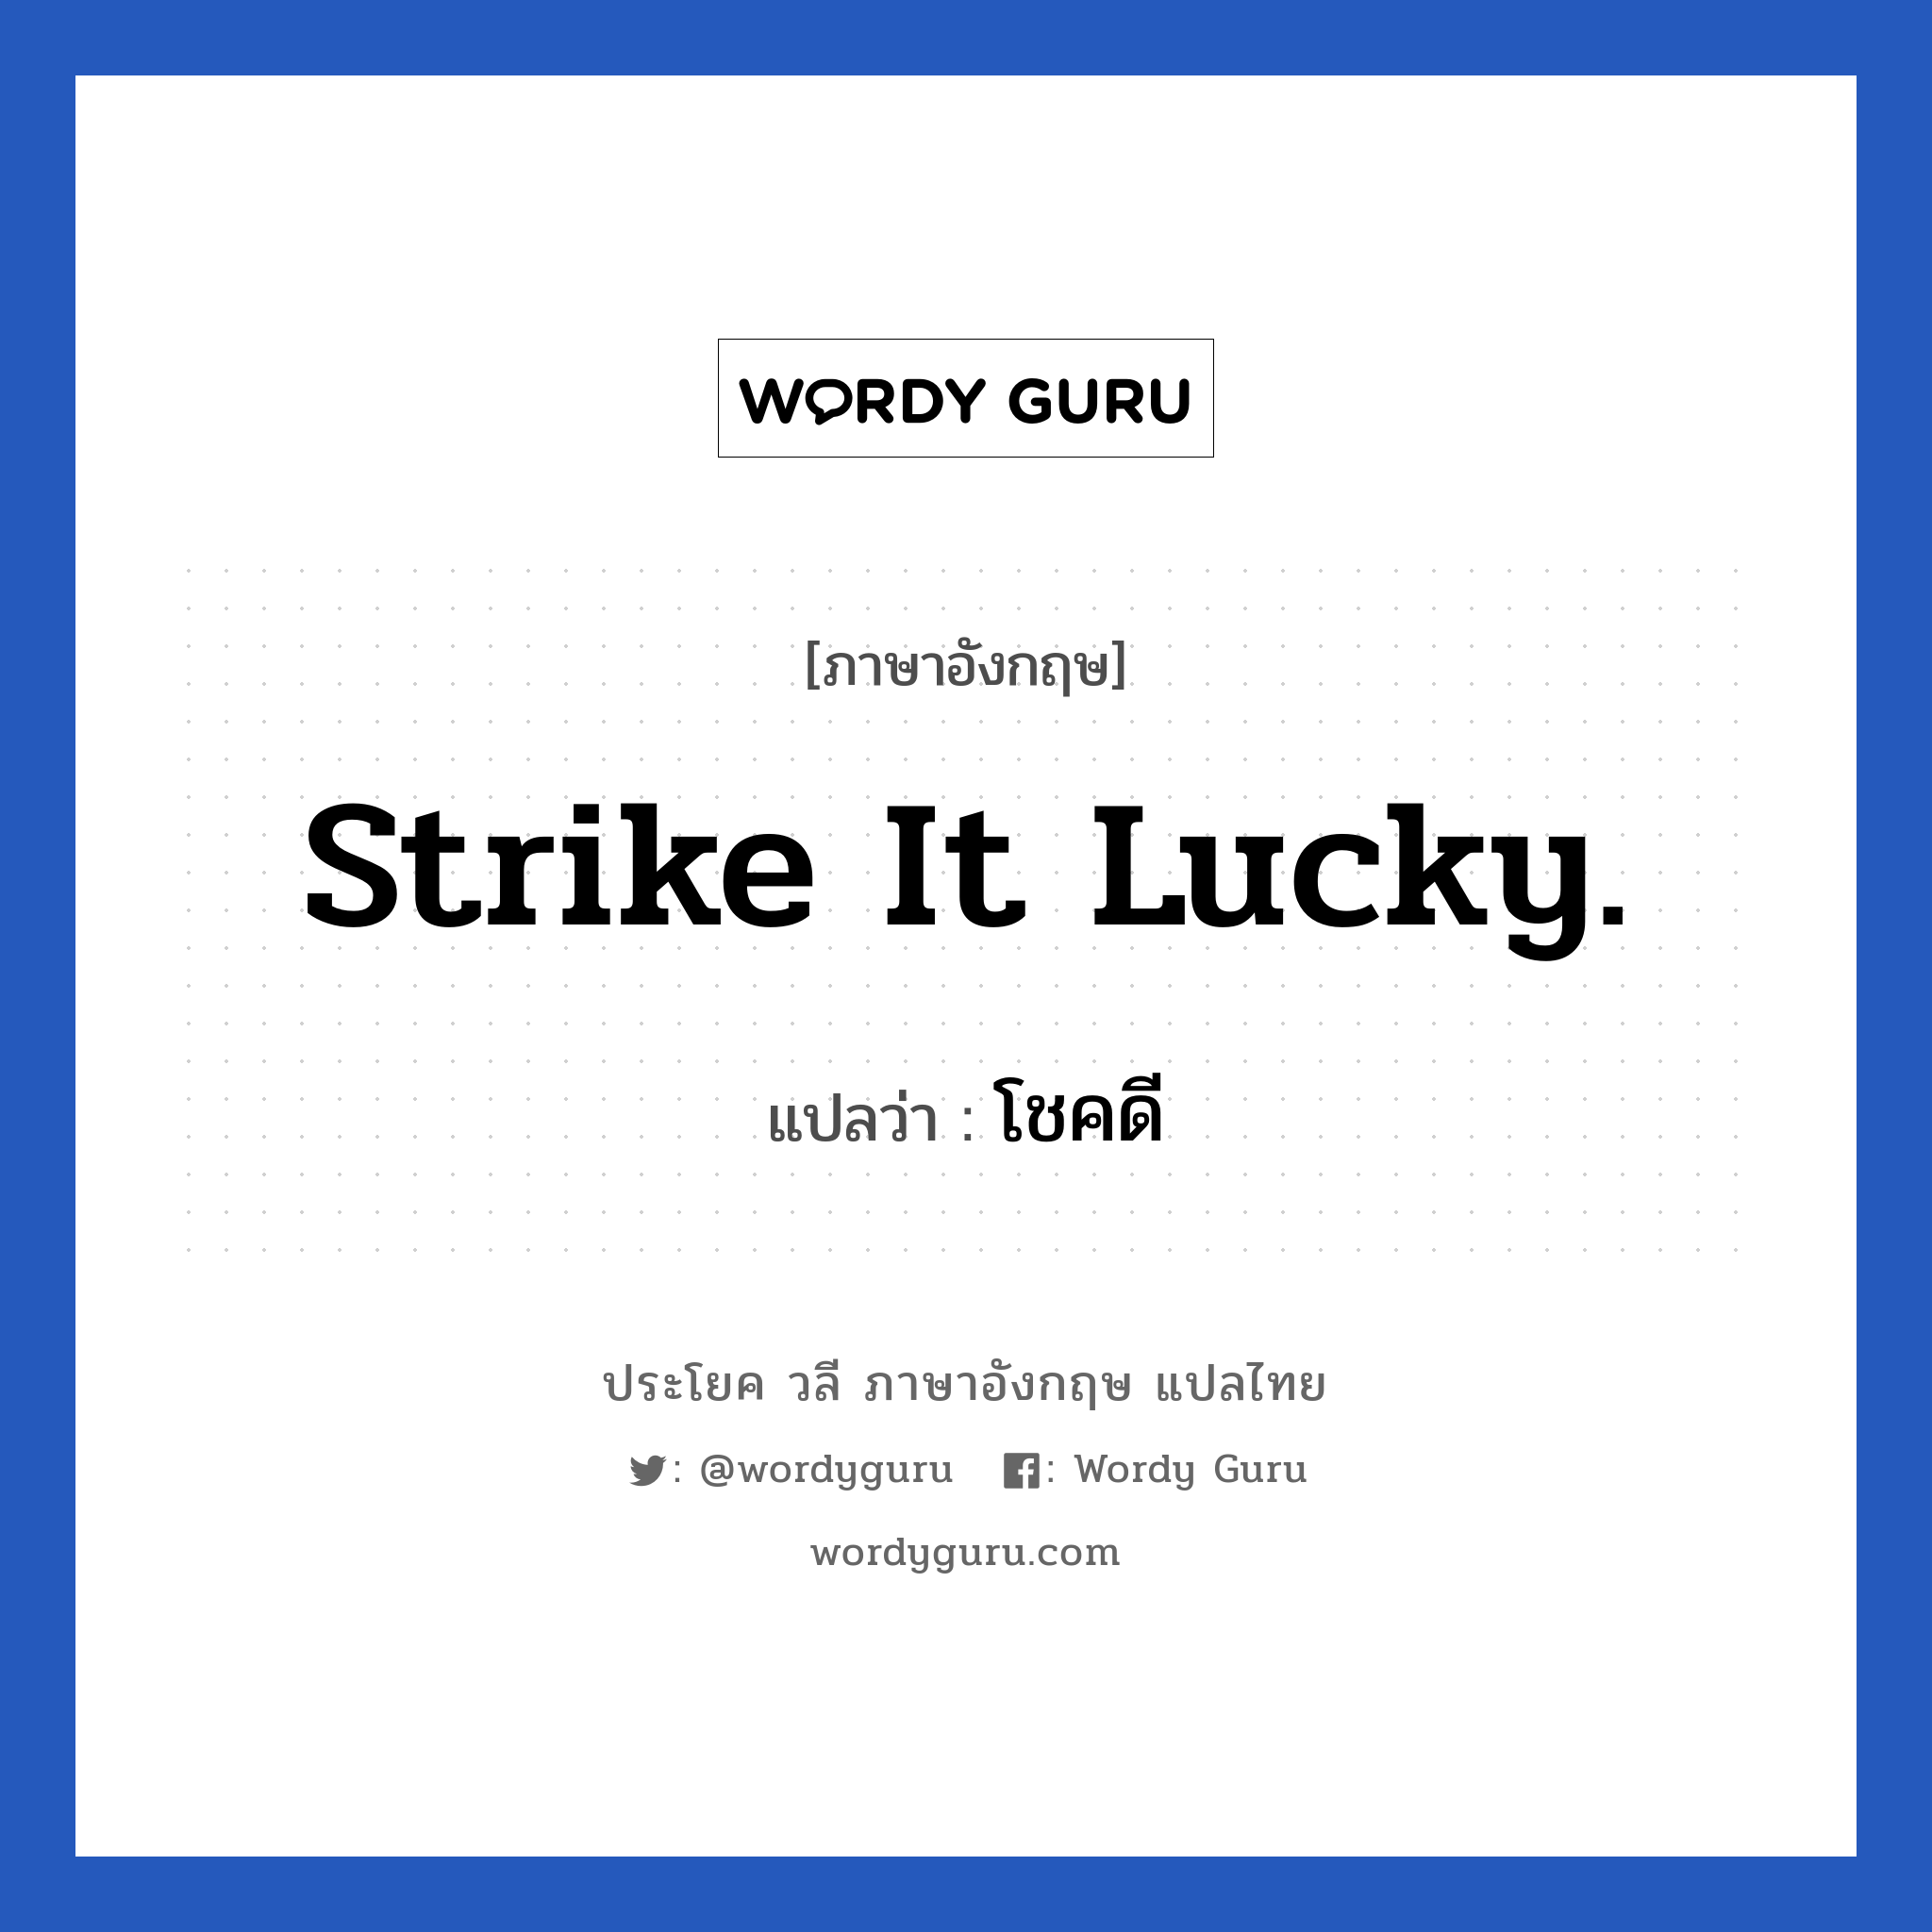 โชคดี ภาษาอังกฤษ?, วลีภาษาอังกฤษ โชคดี แปลว่า Strike it lucky.